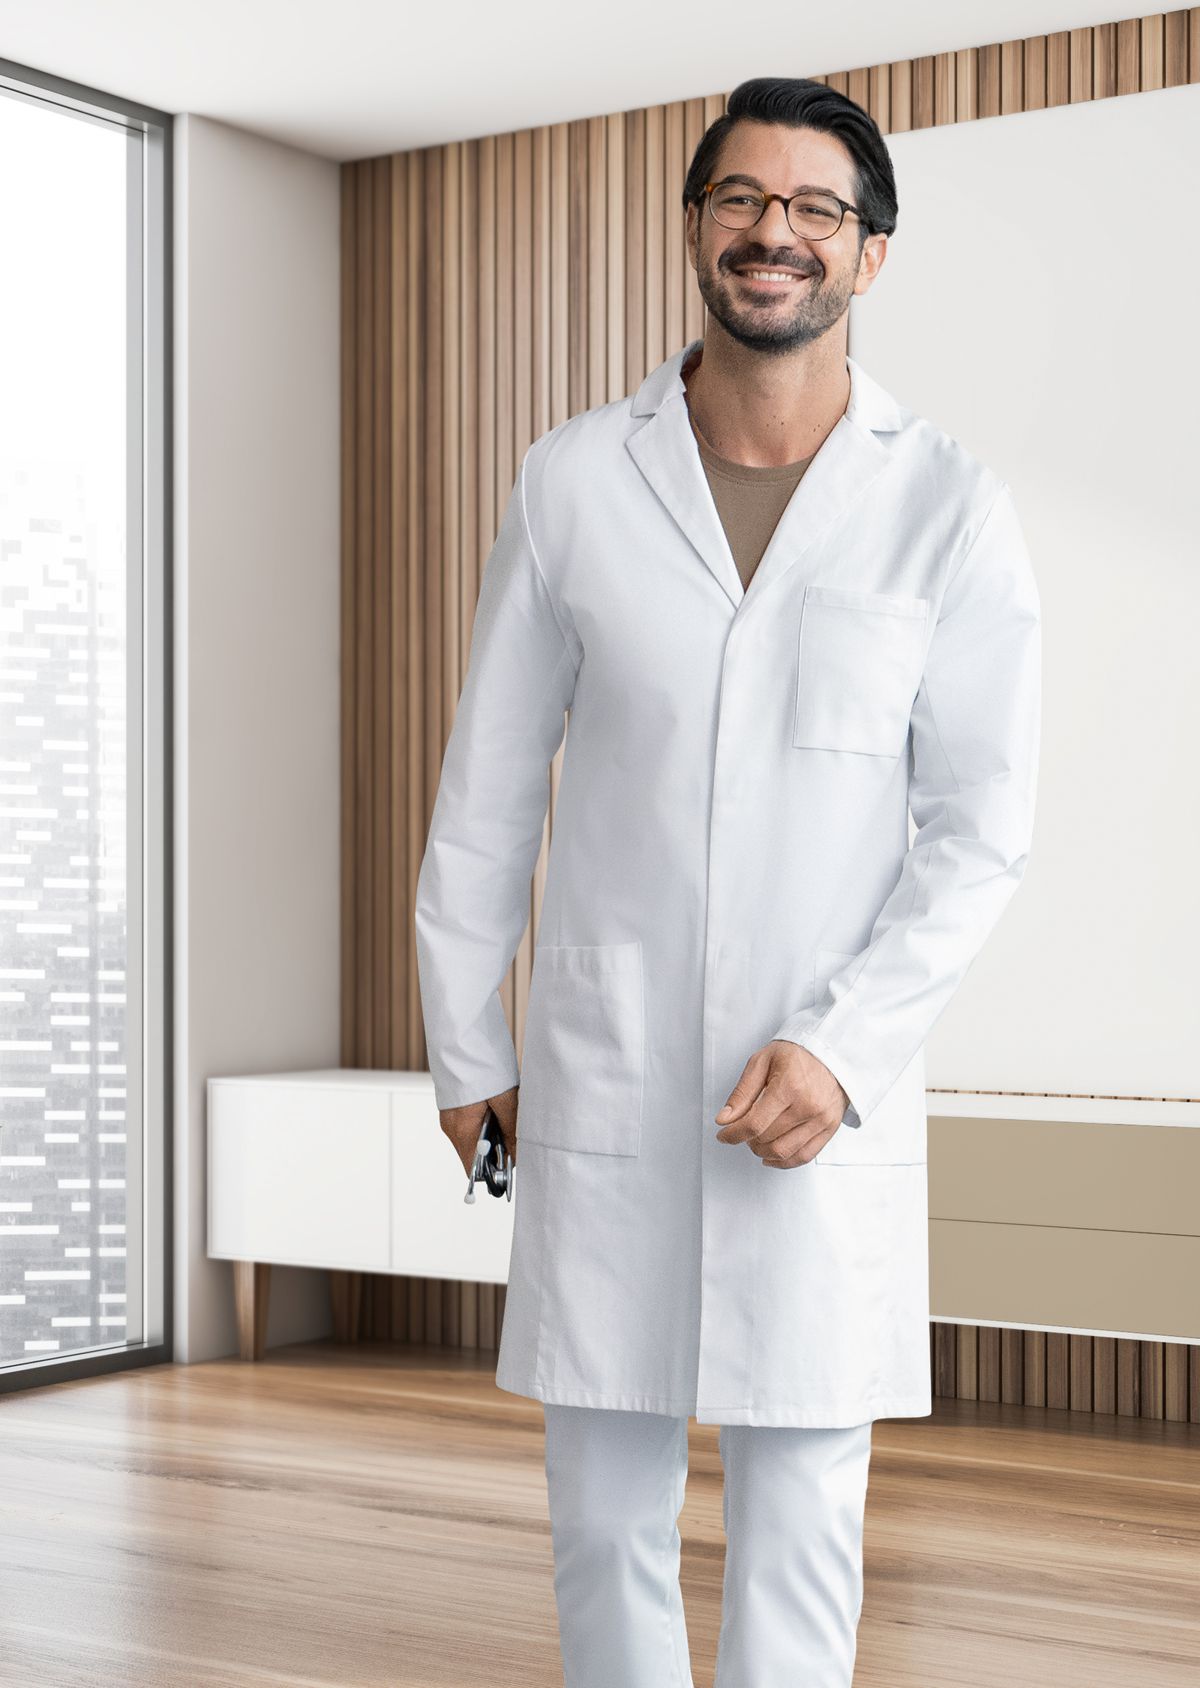 BP® Cotton men's doctor's coat